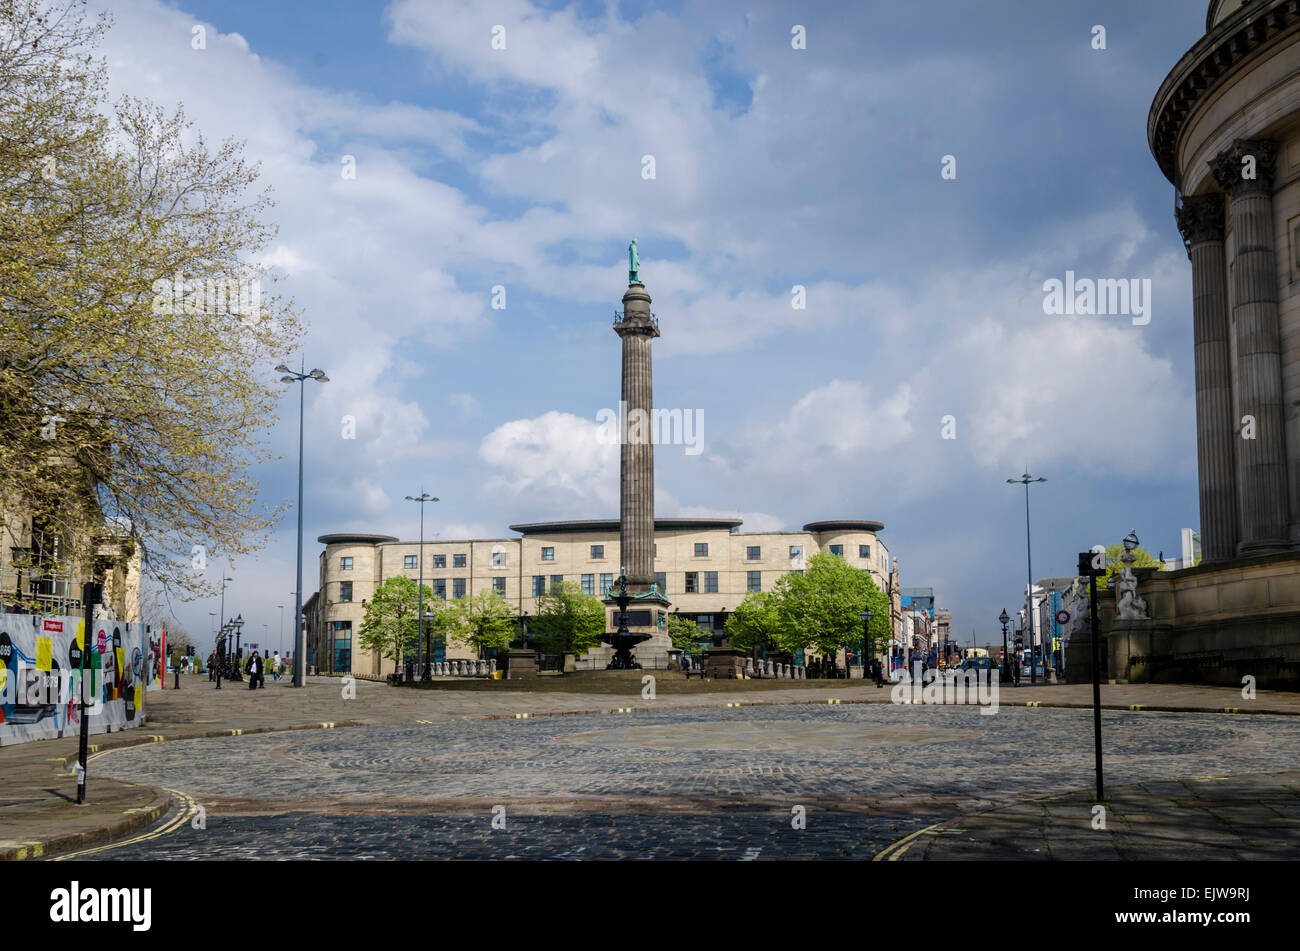 Wellington's Column (or Waterloo Memorial) in Liverpool, UK Stock Photo